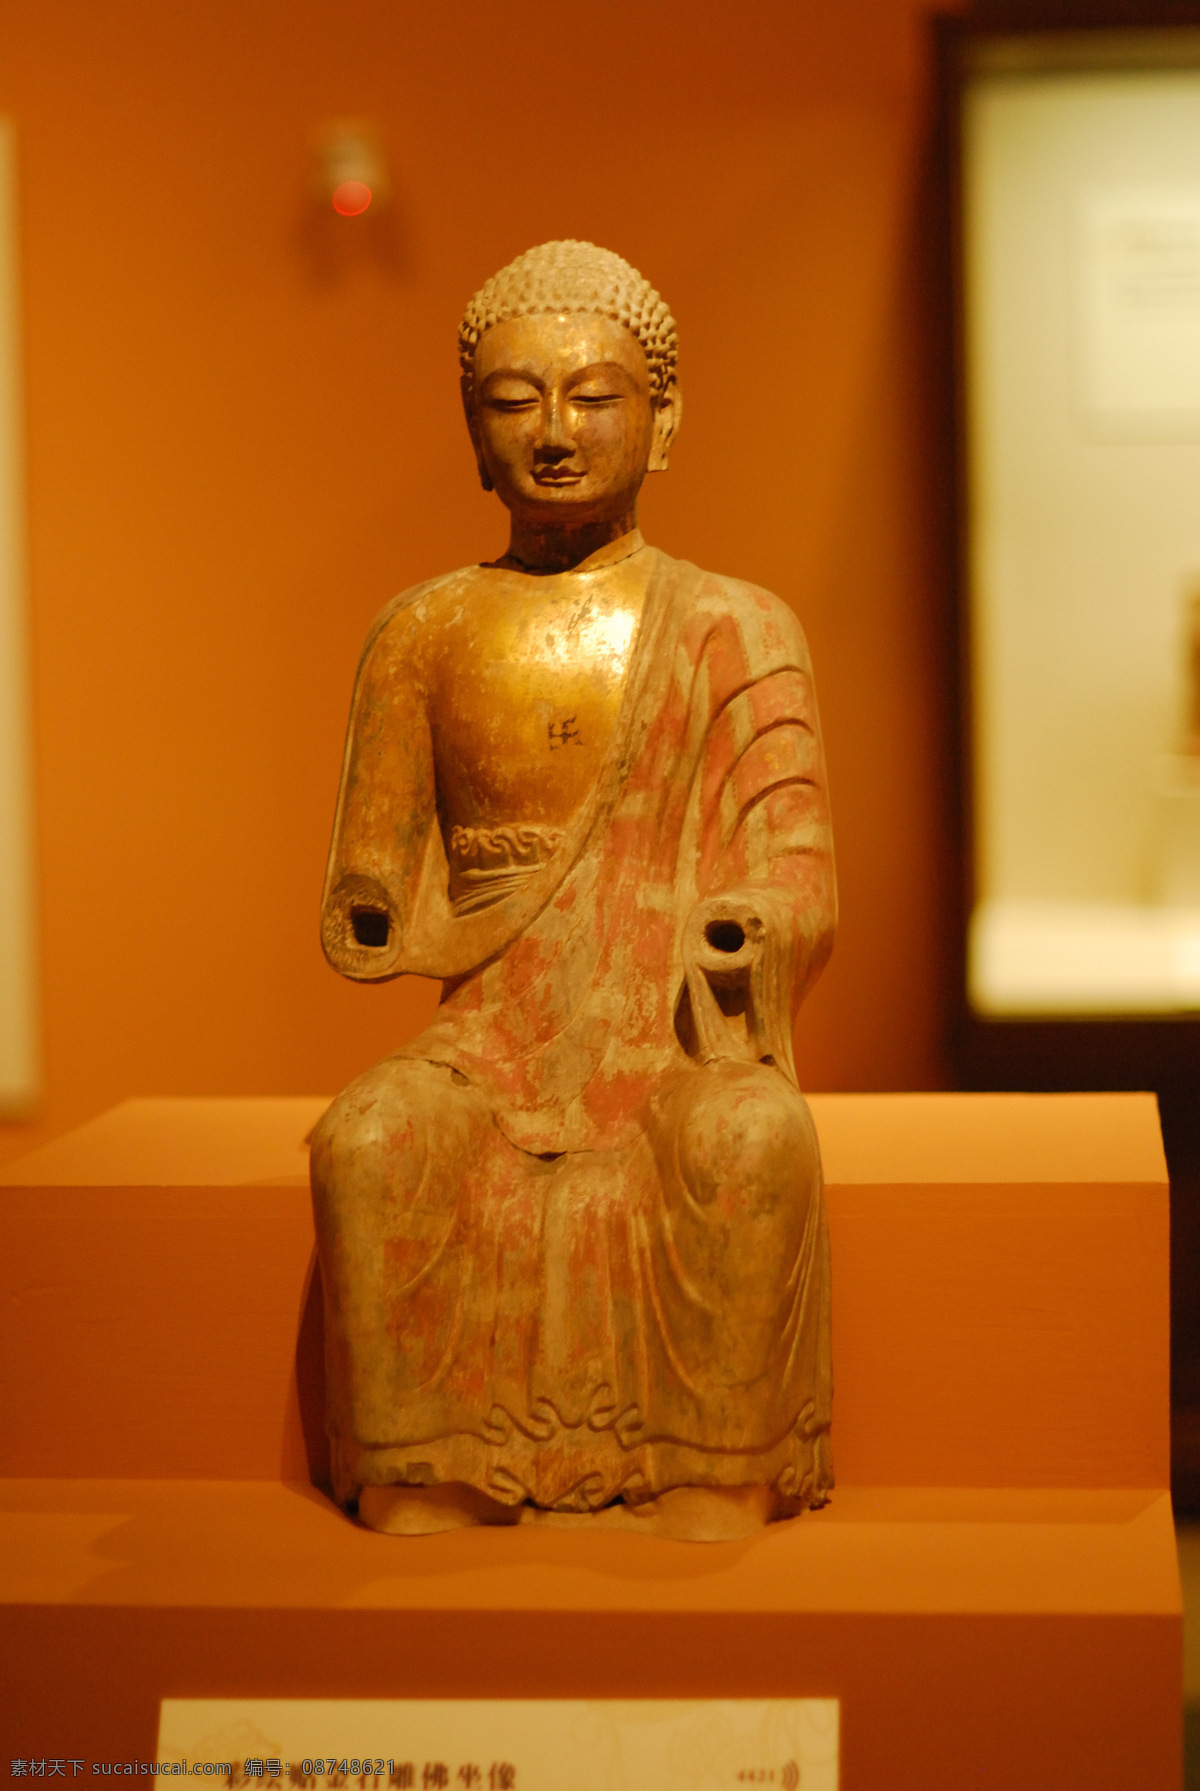 佛像 菩萨像 神像 天王 天神 雕像 石像 铜像 国宝 博物馆 收藏 珍宝 传统文化 文化艺术